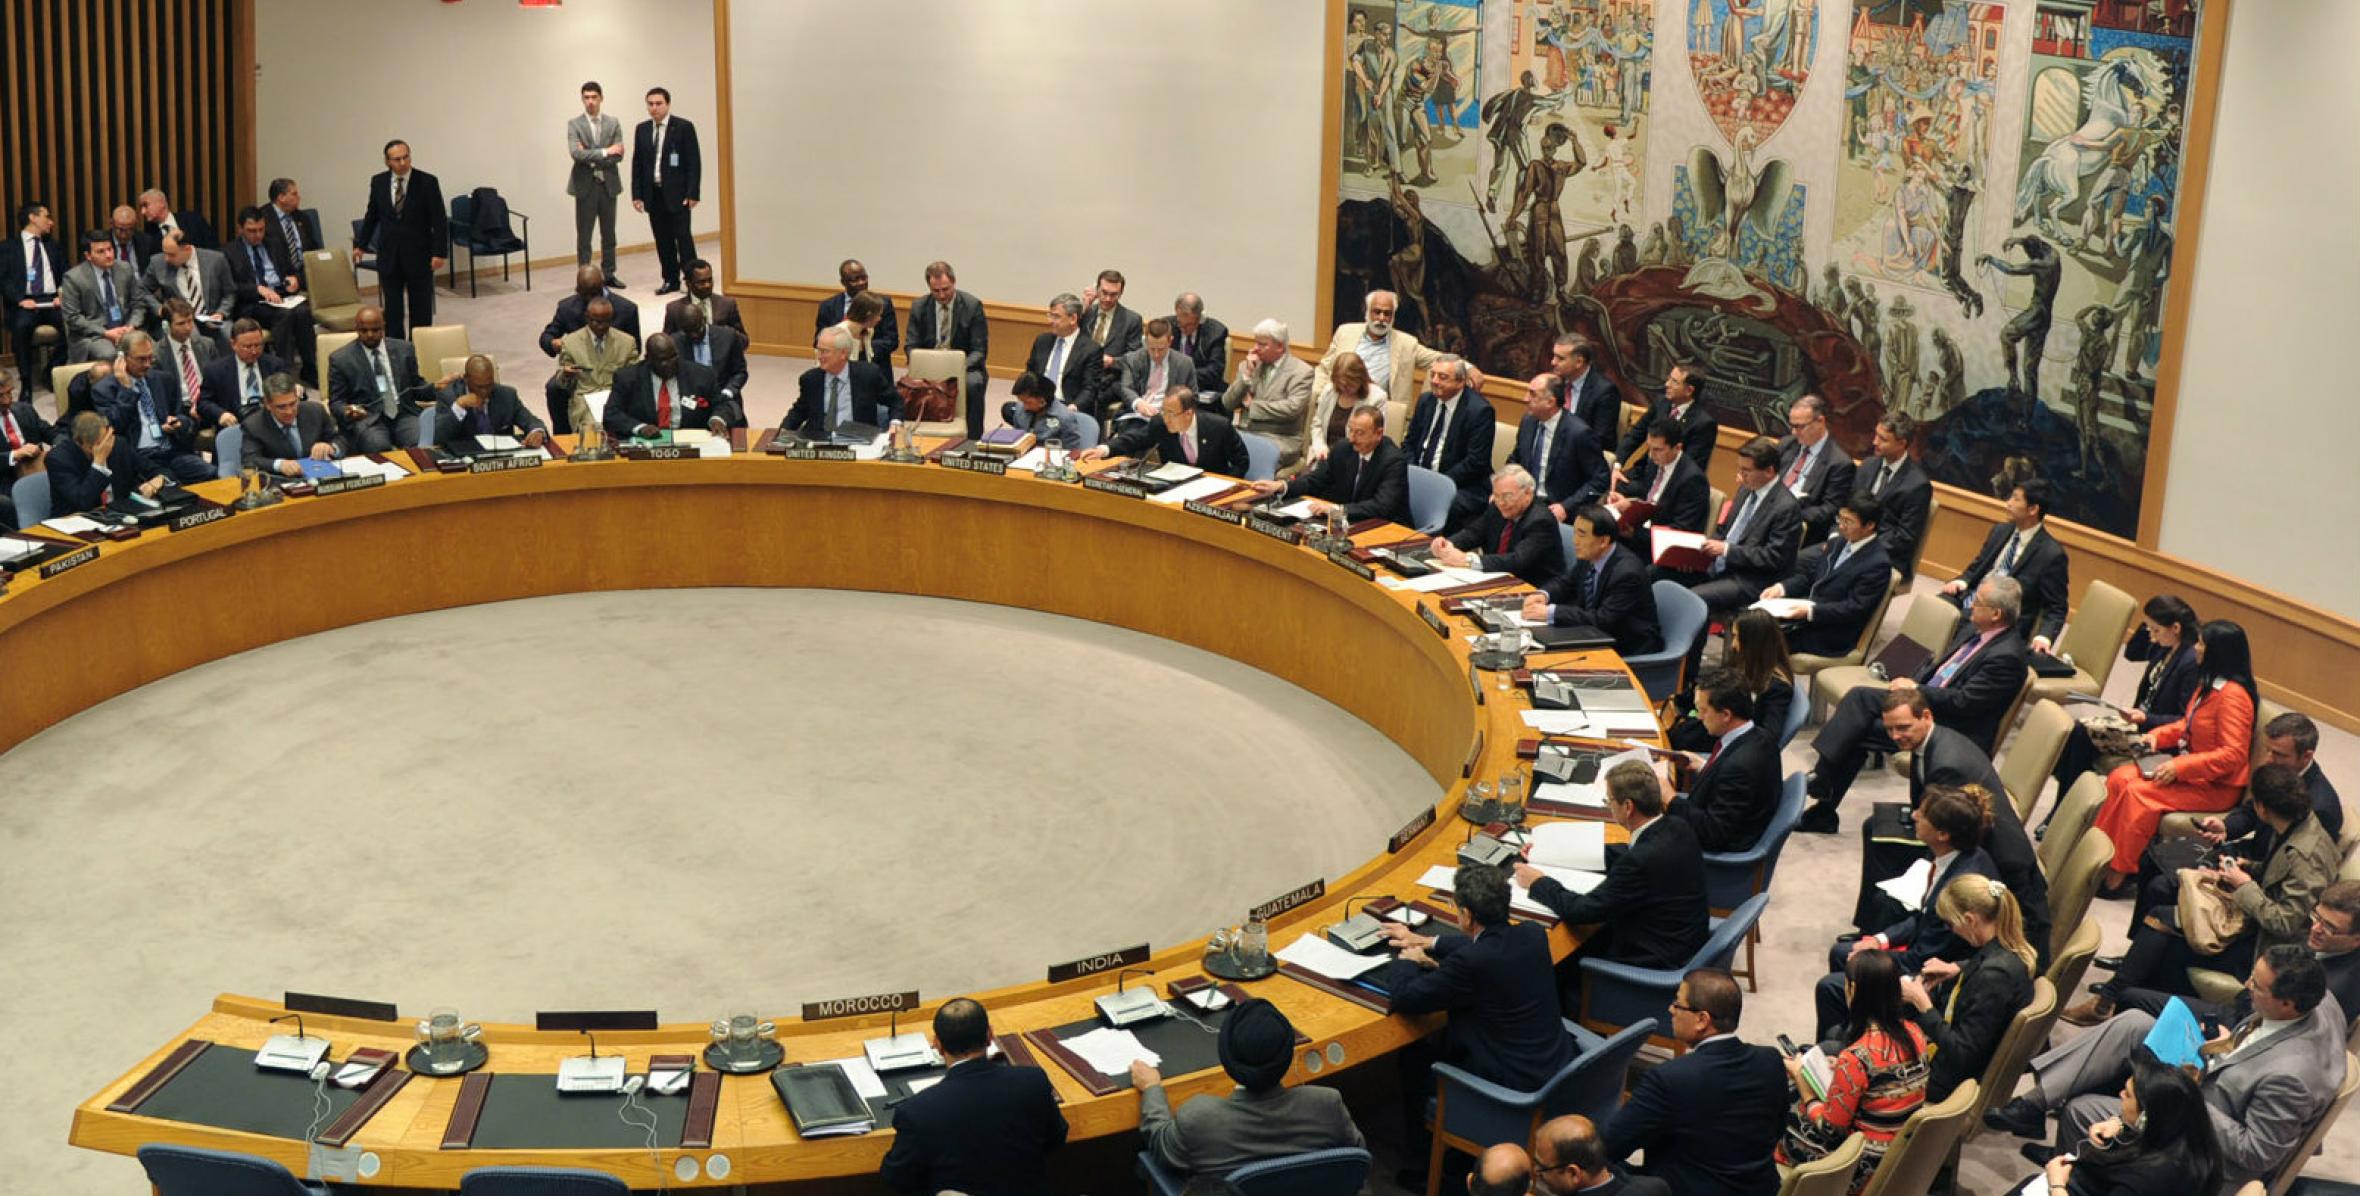 Под председательством Ильхама Алиева состоялось заседание высокого уровня Совета Безопасности ООН